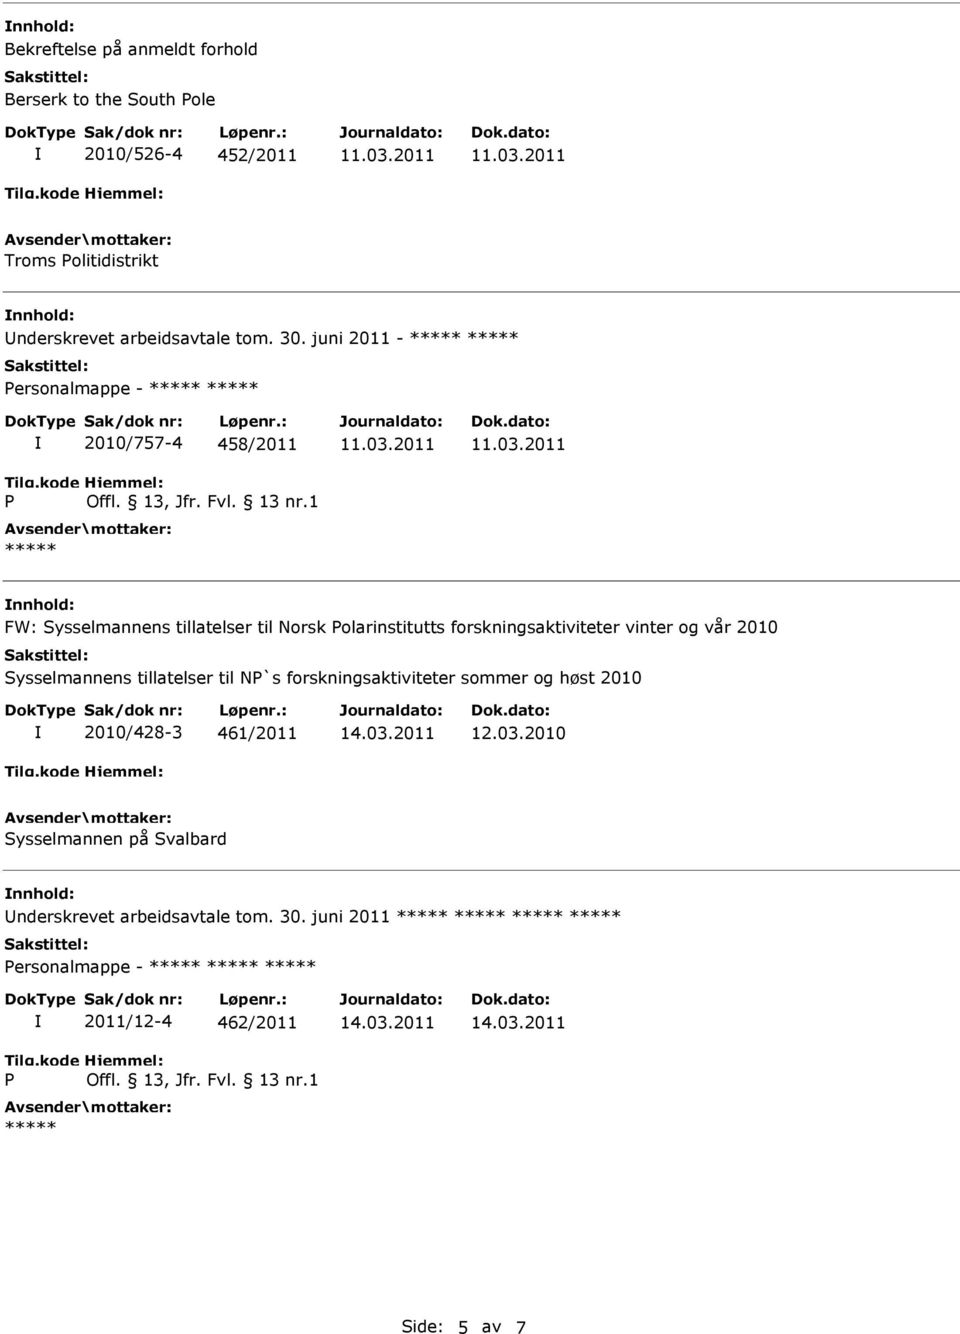 juni 2011 - ersonalmappe - 2010/757-4 458/2011 nnhold: FW: Sysselmannens tillatelser til Norsk olarinstitutts forskningsaktiviteter vinter